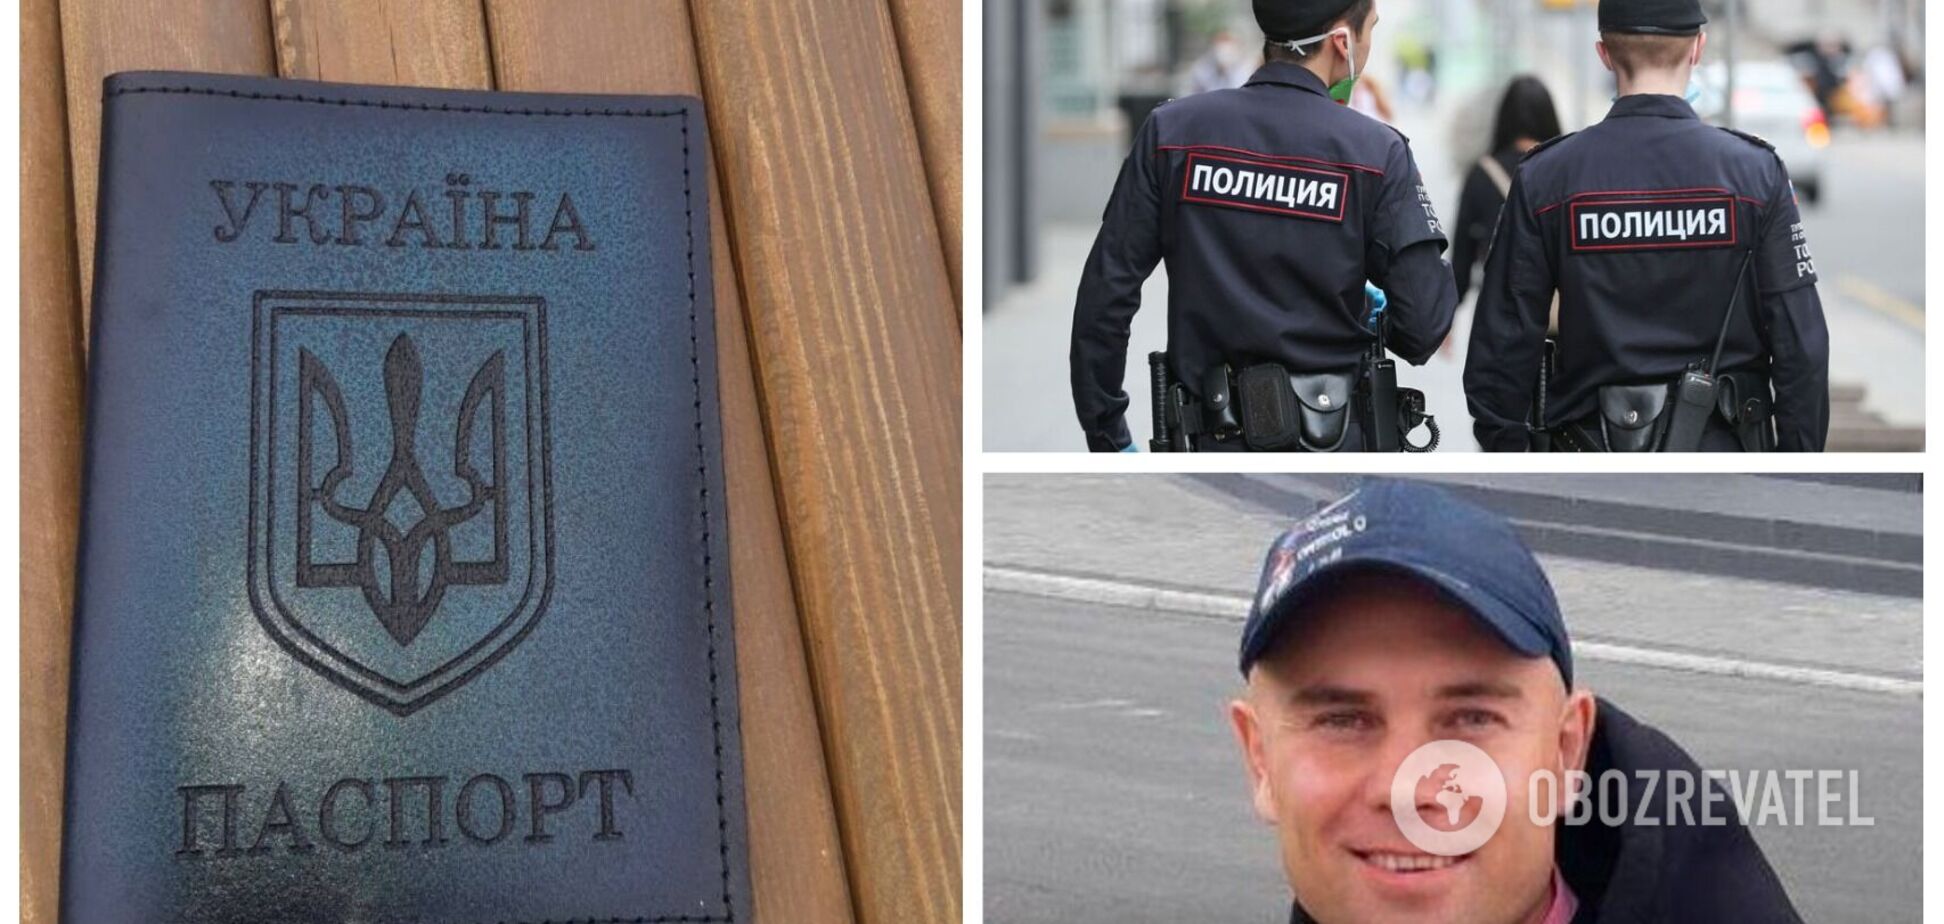 В РФ полицейские избили инвалида из-за обложки паспорта с гербом Украины: обвинили в дискредитации армии. Фото